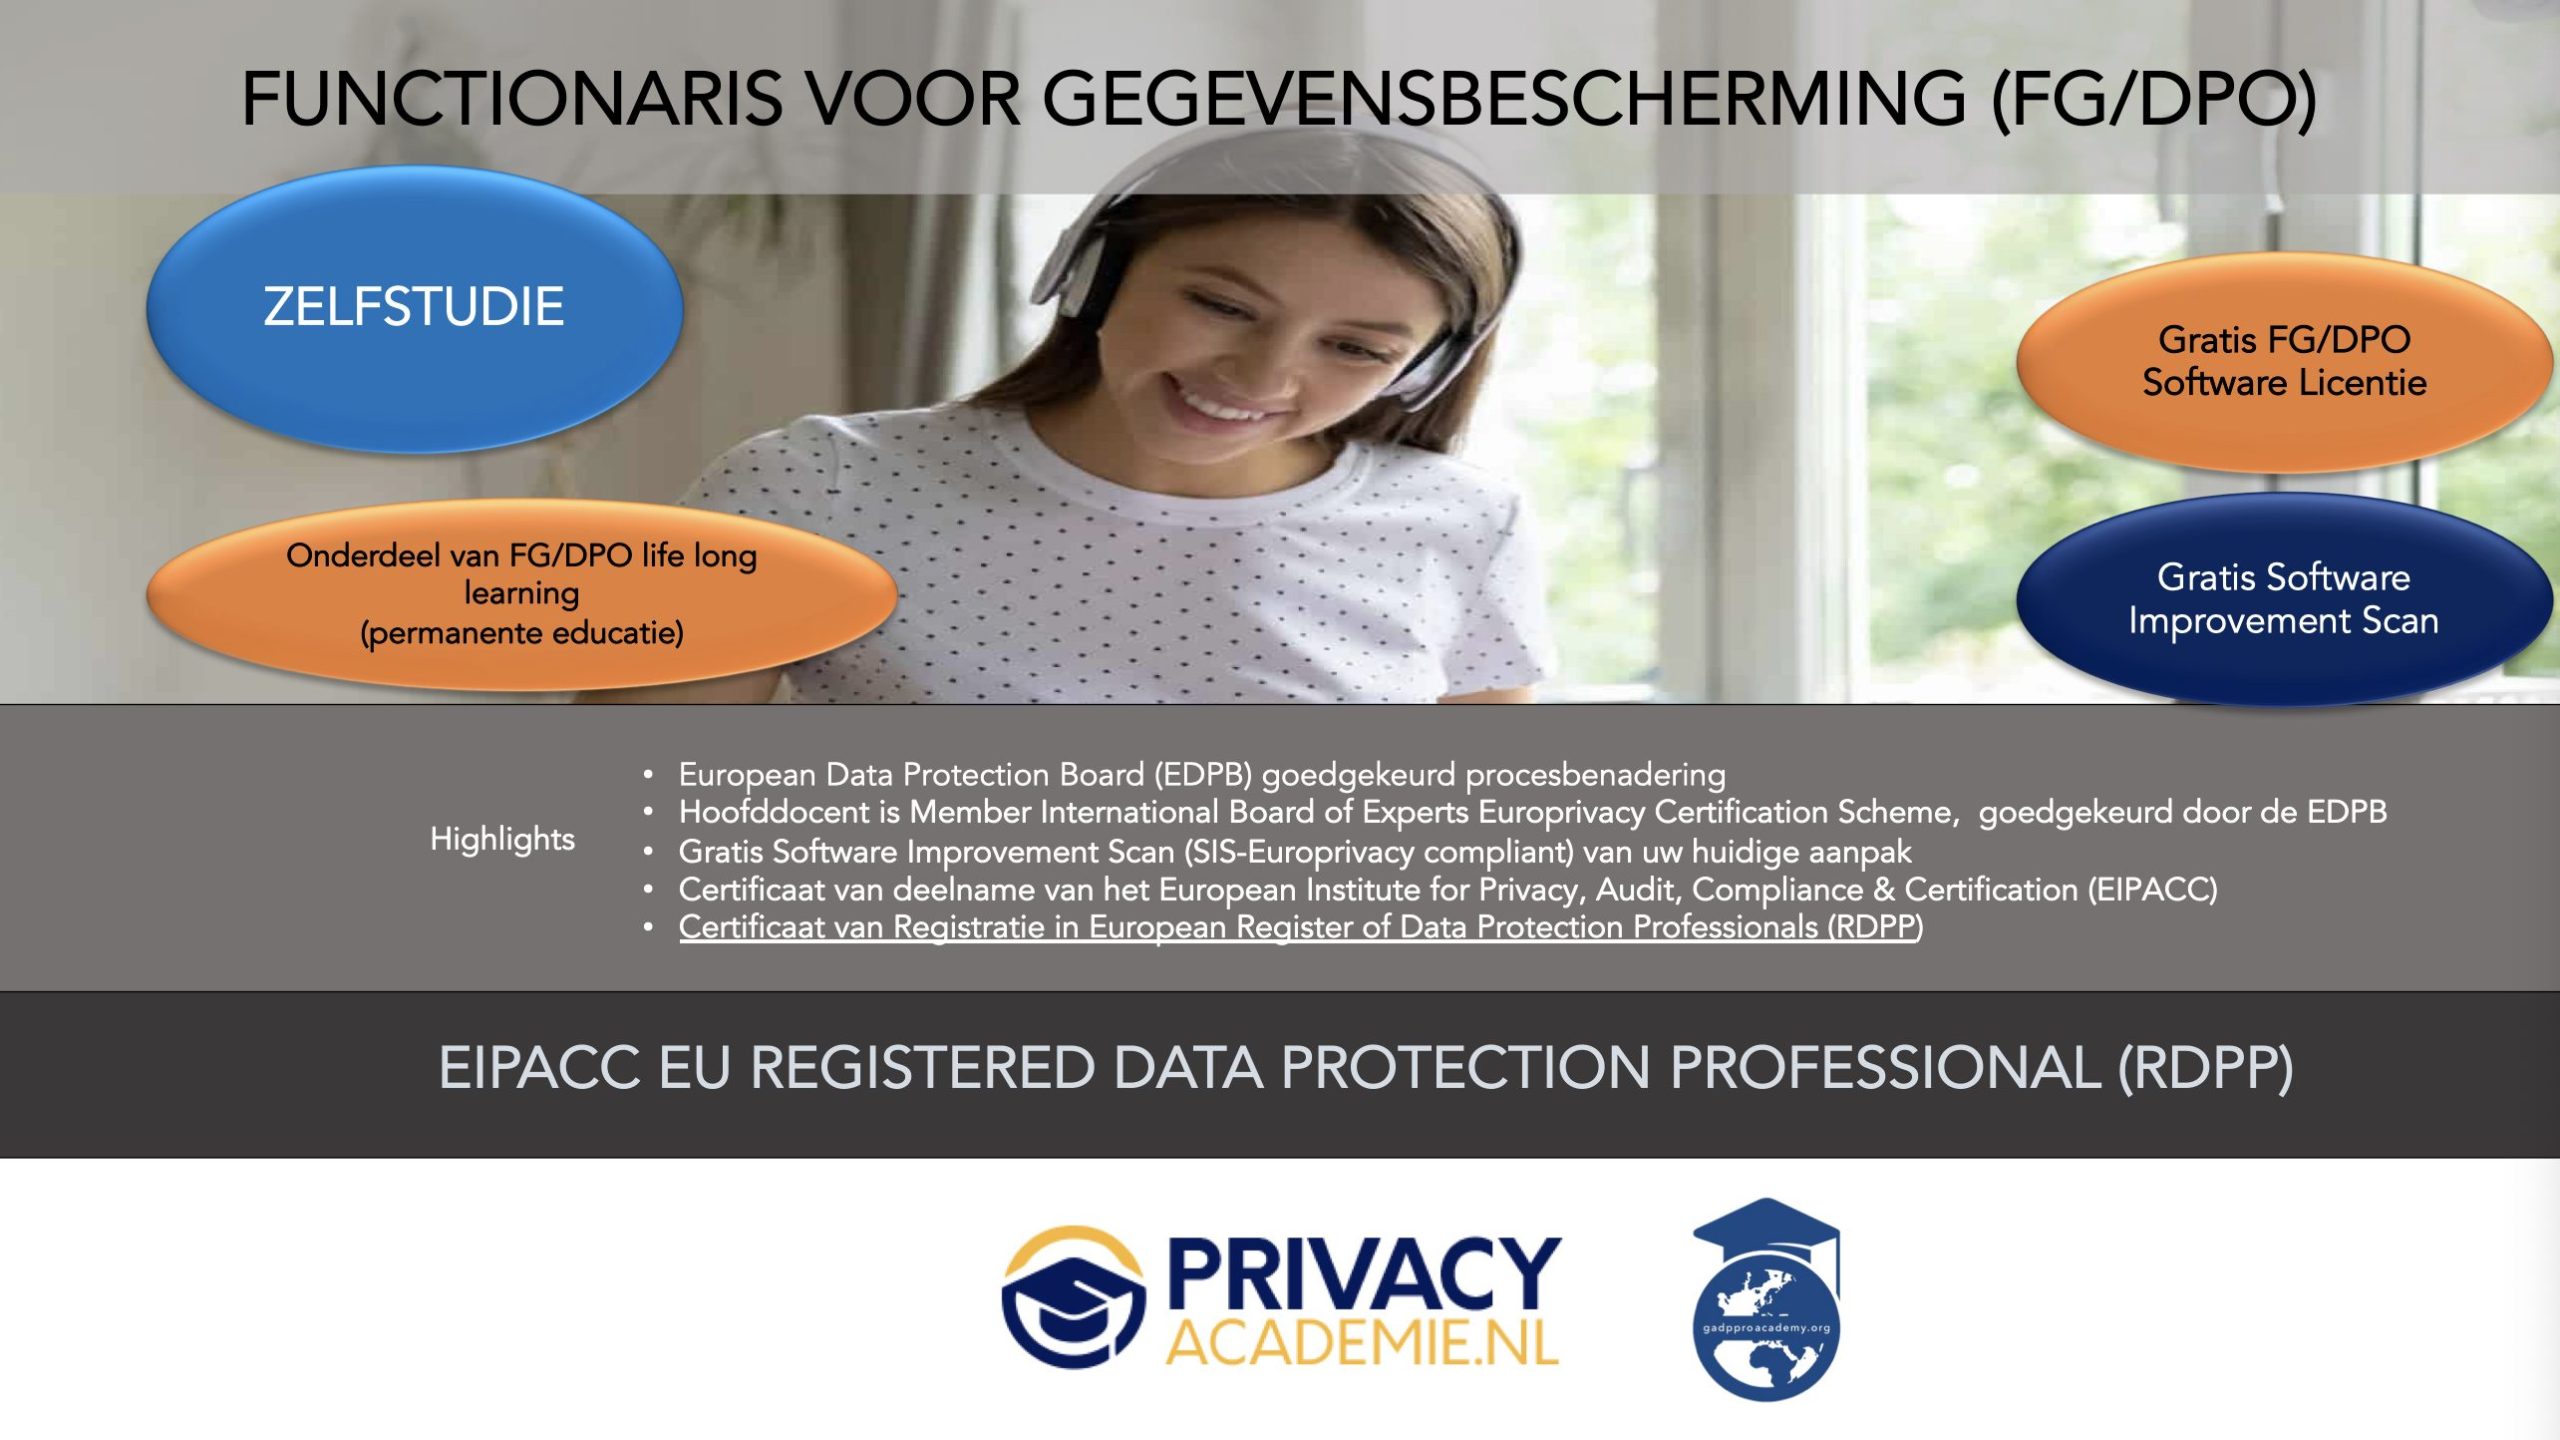 01 Zelfstudie FG DPO www.privacyacademie.nl